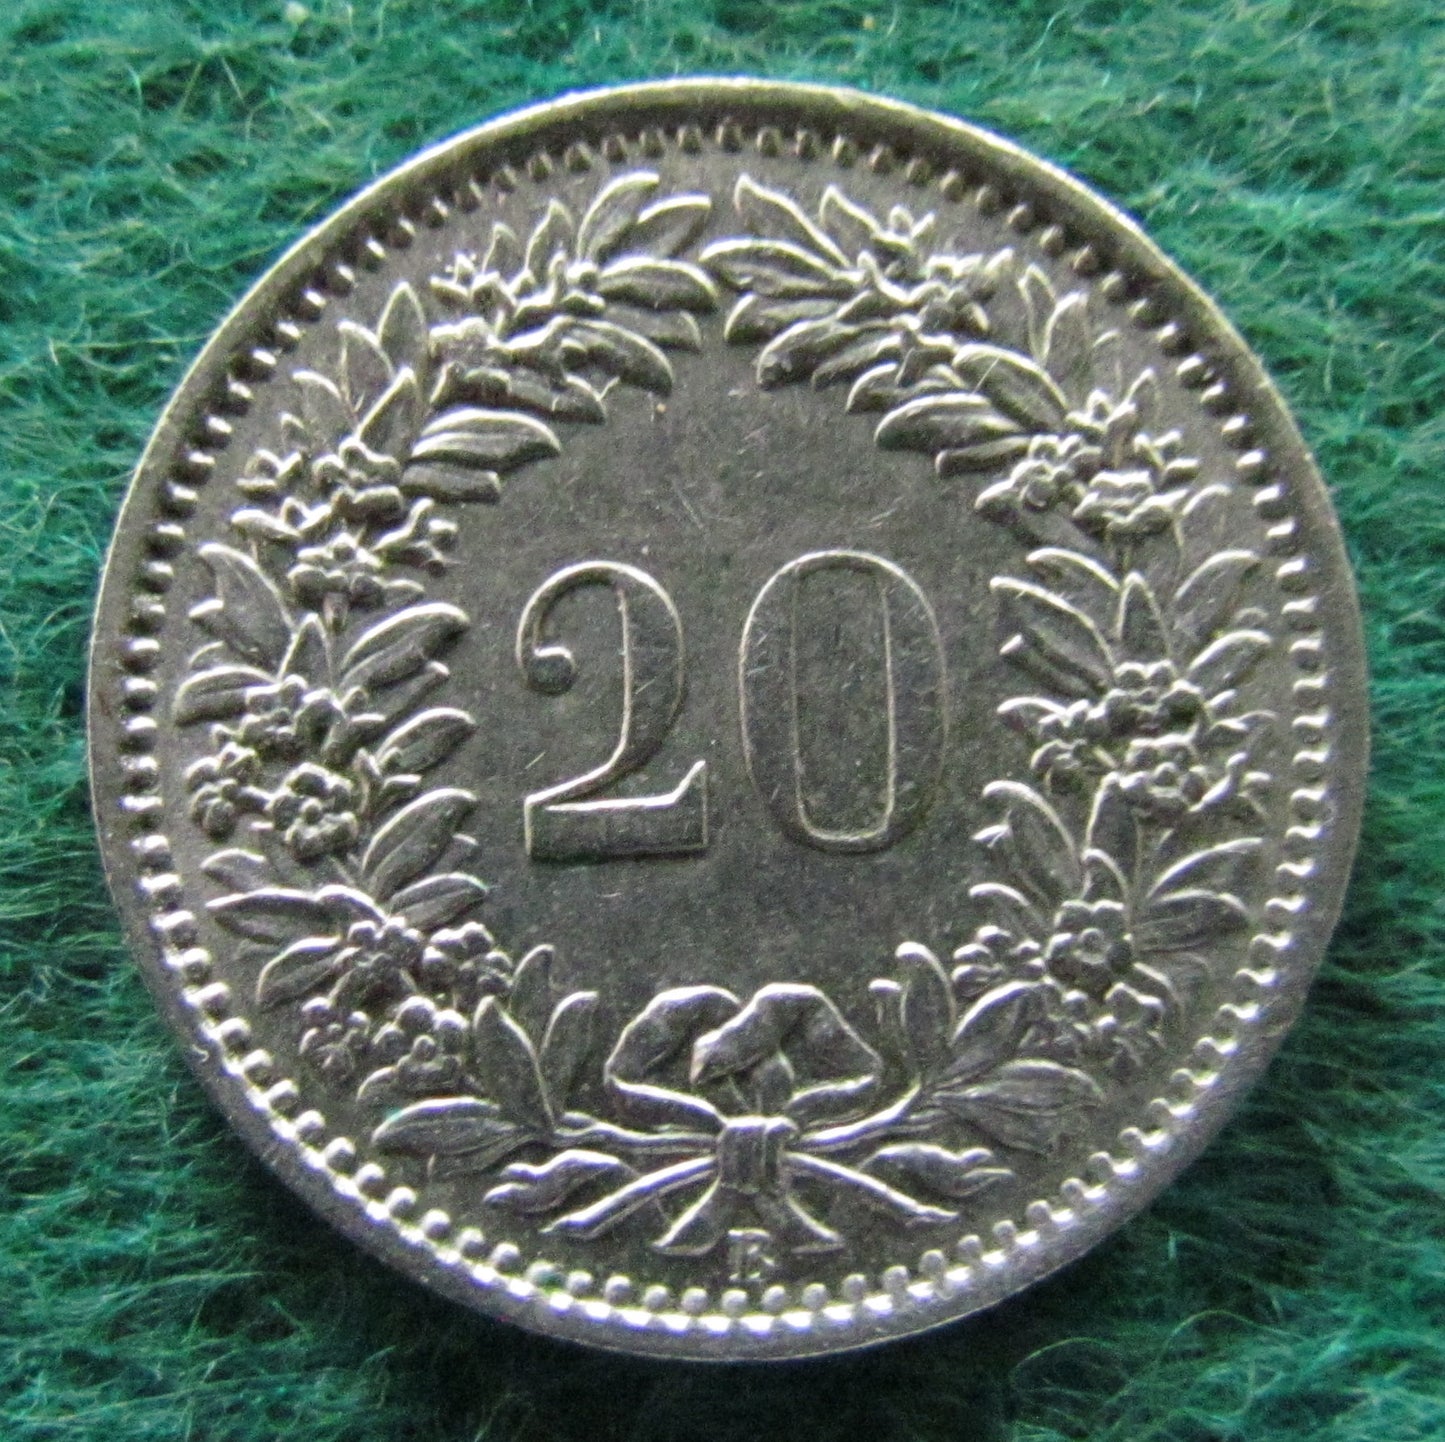 Helvetica Switzerland Swiss 1966 20 Rappen Coin - Circulated